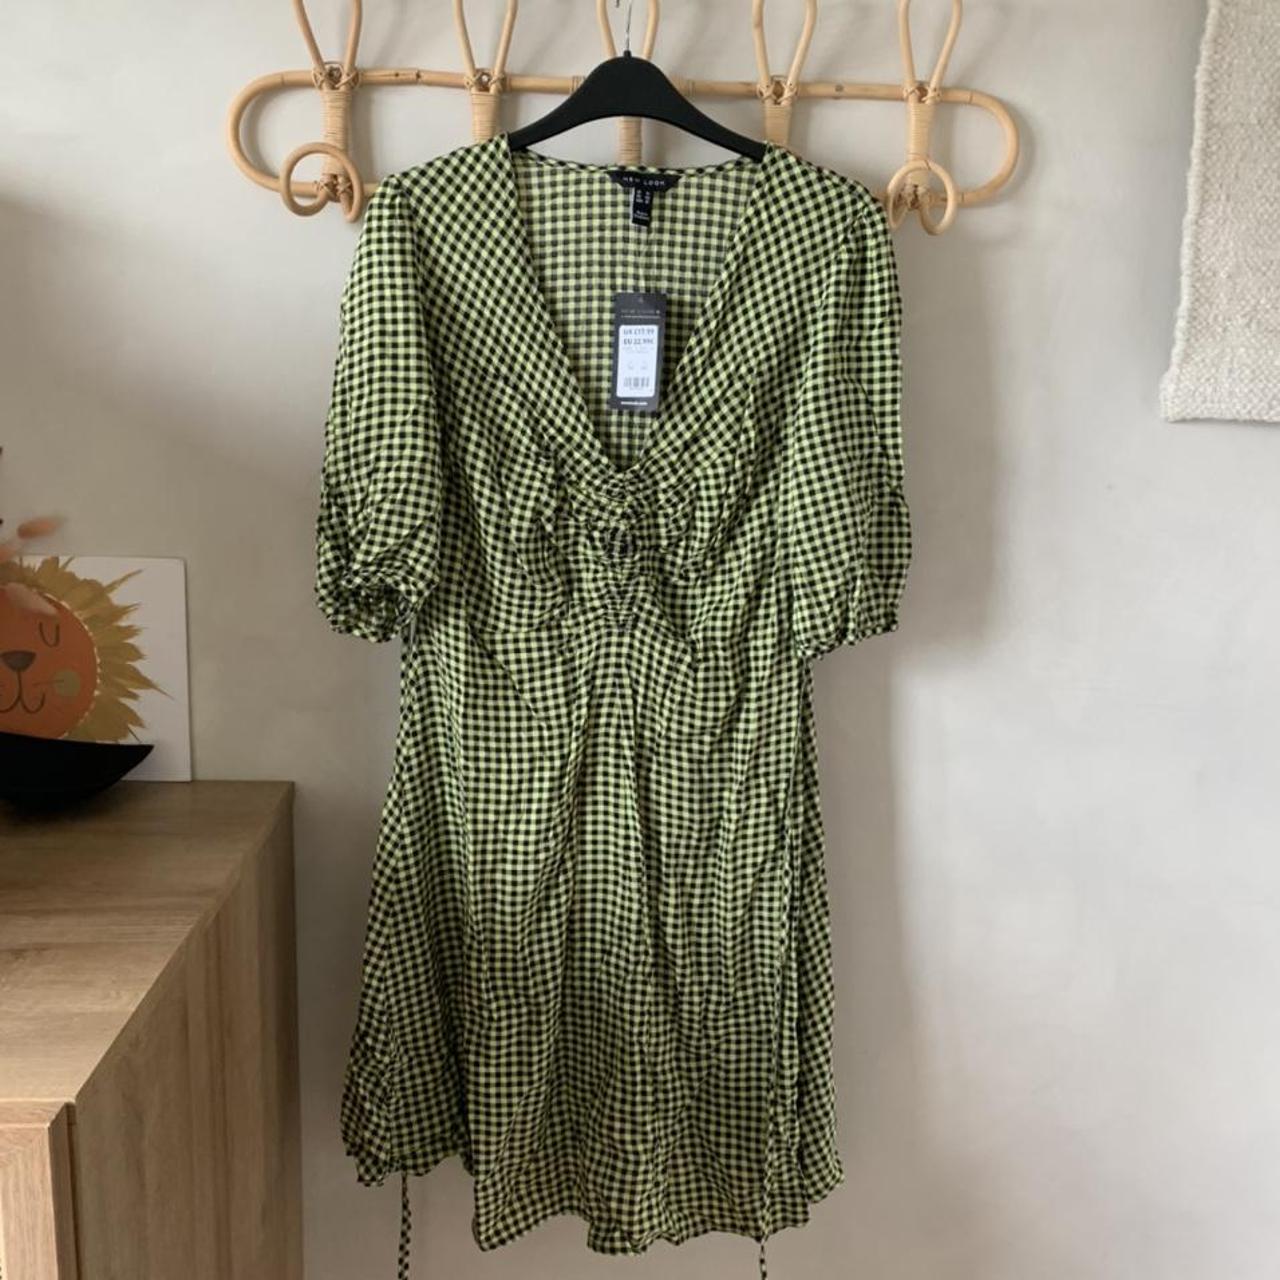 New look cute green gingham tea dress with waist... - Depop